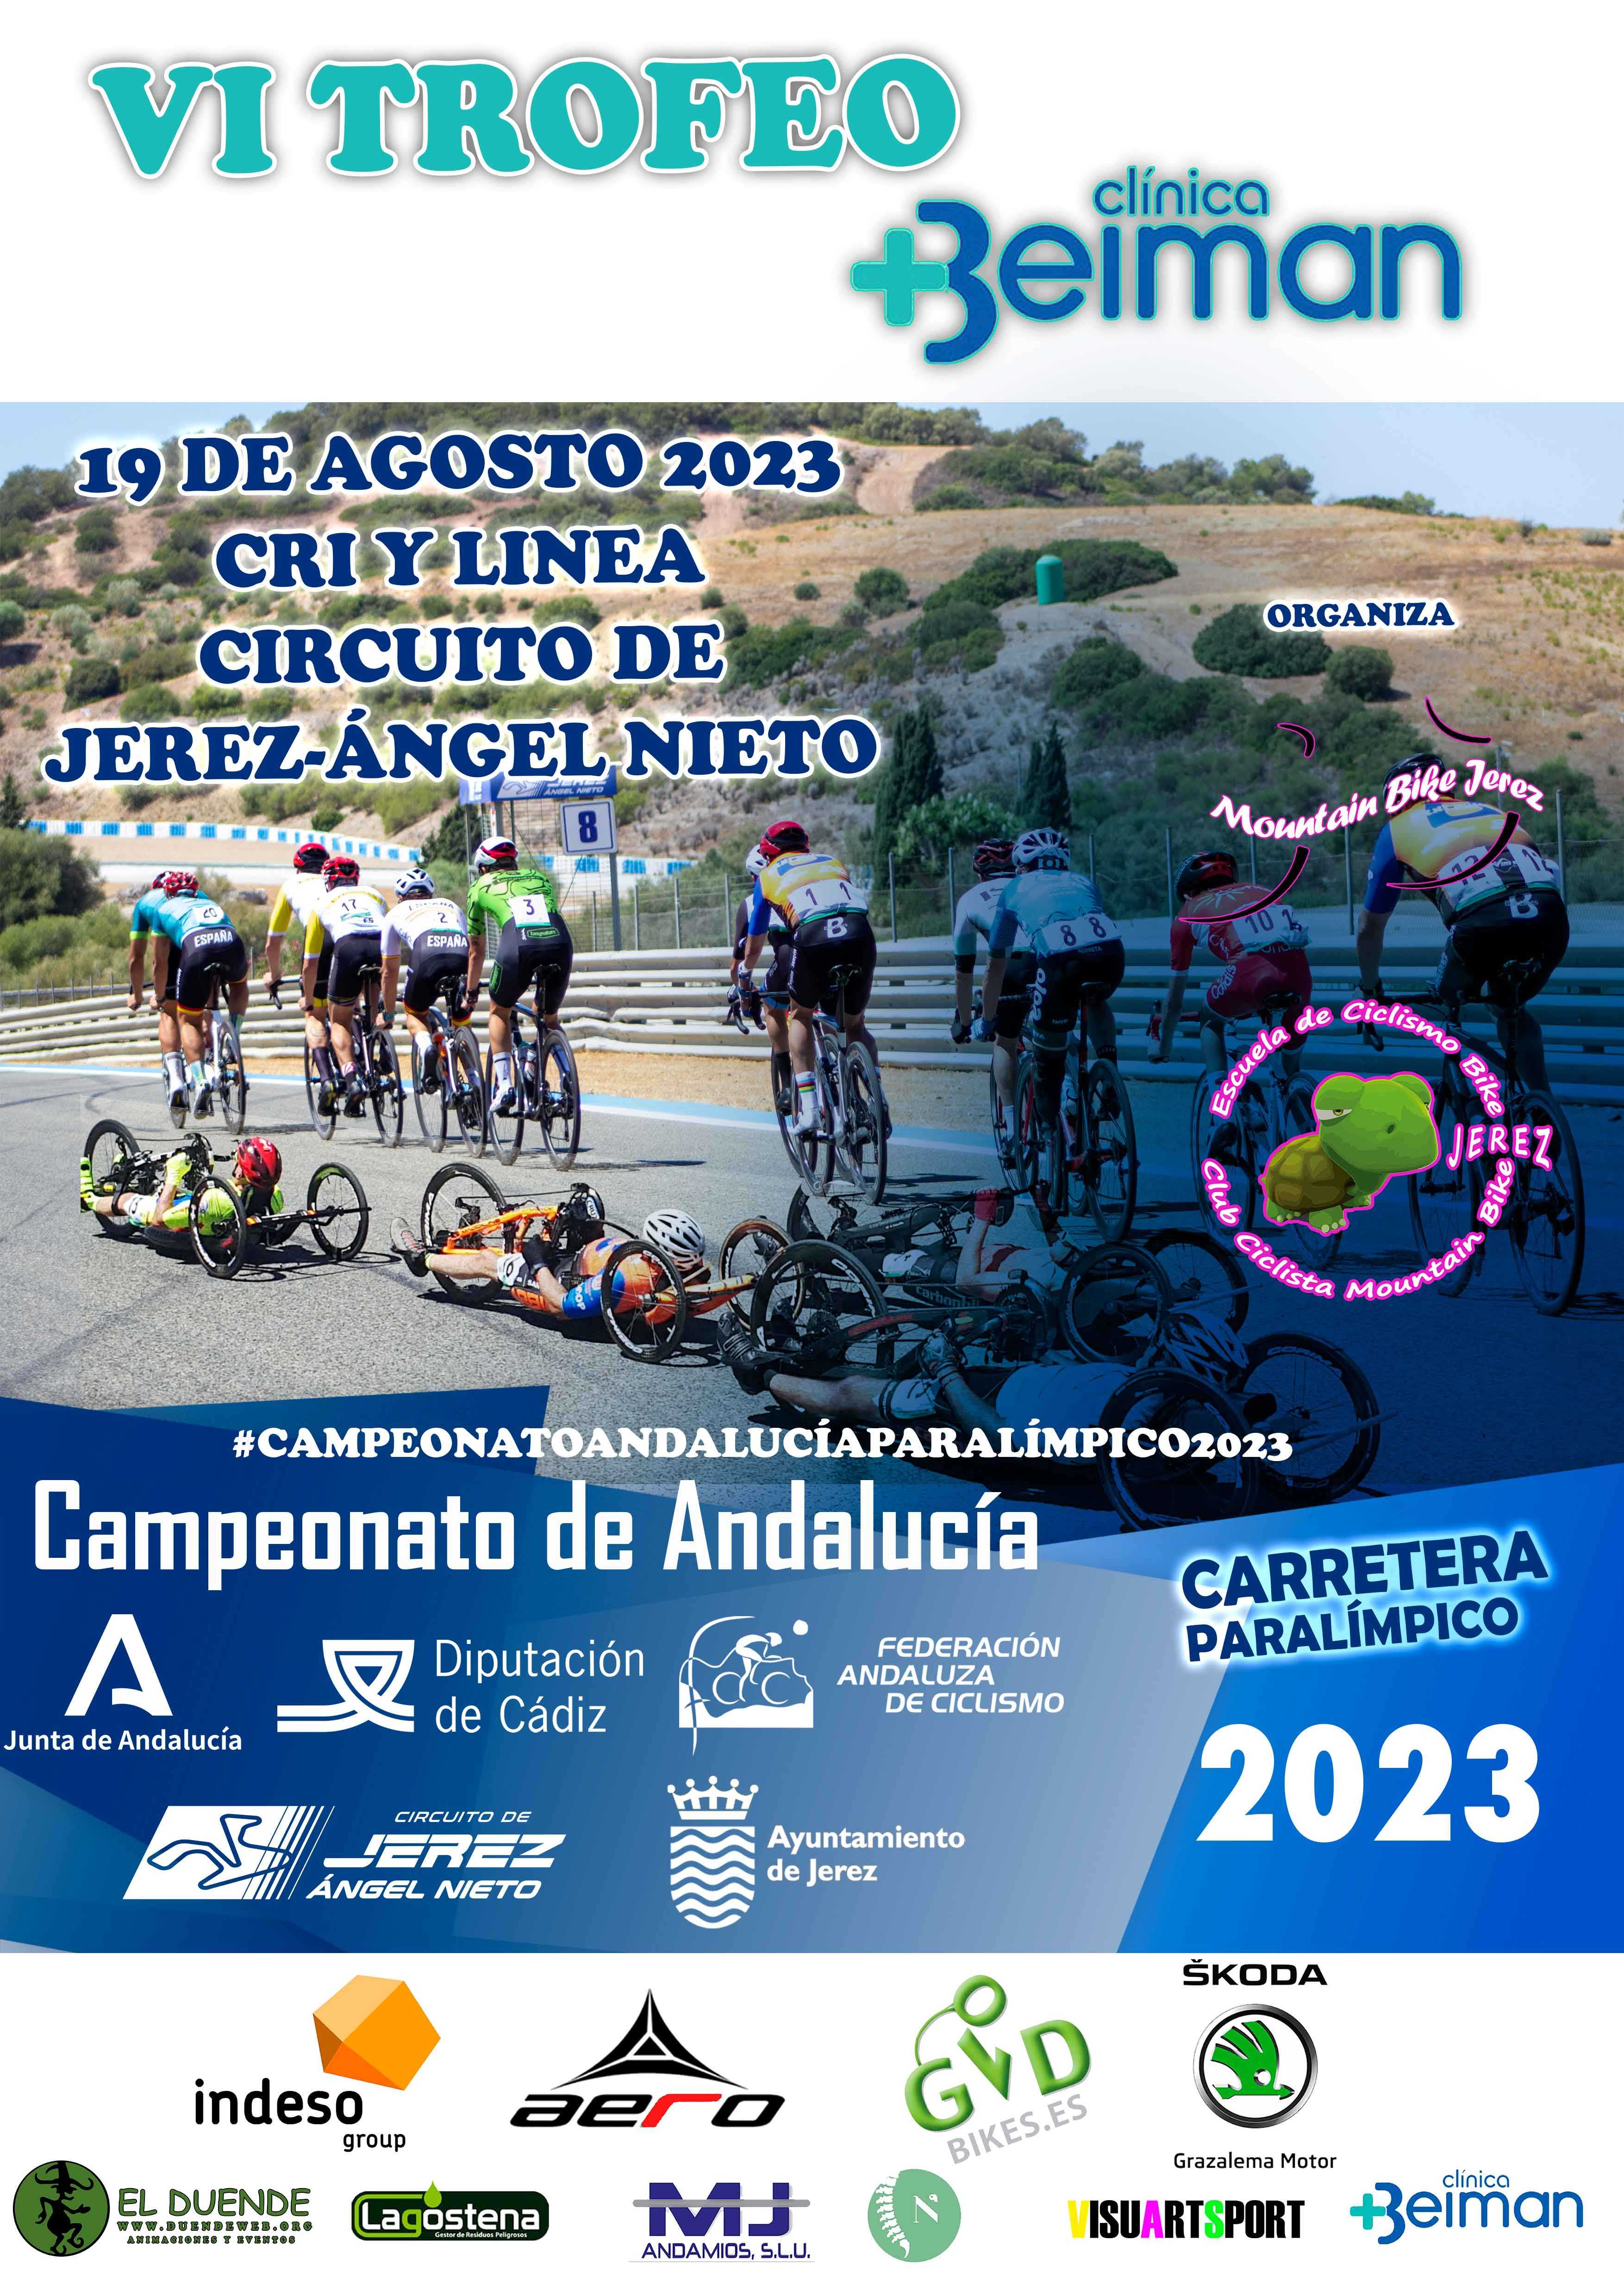 El Circuito de Jerez-Ángel Nieto acogerá el Campeonato de Andalucía de Ciclismo Paralímpico 2023